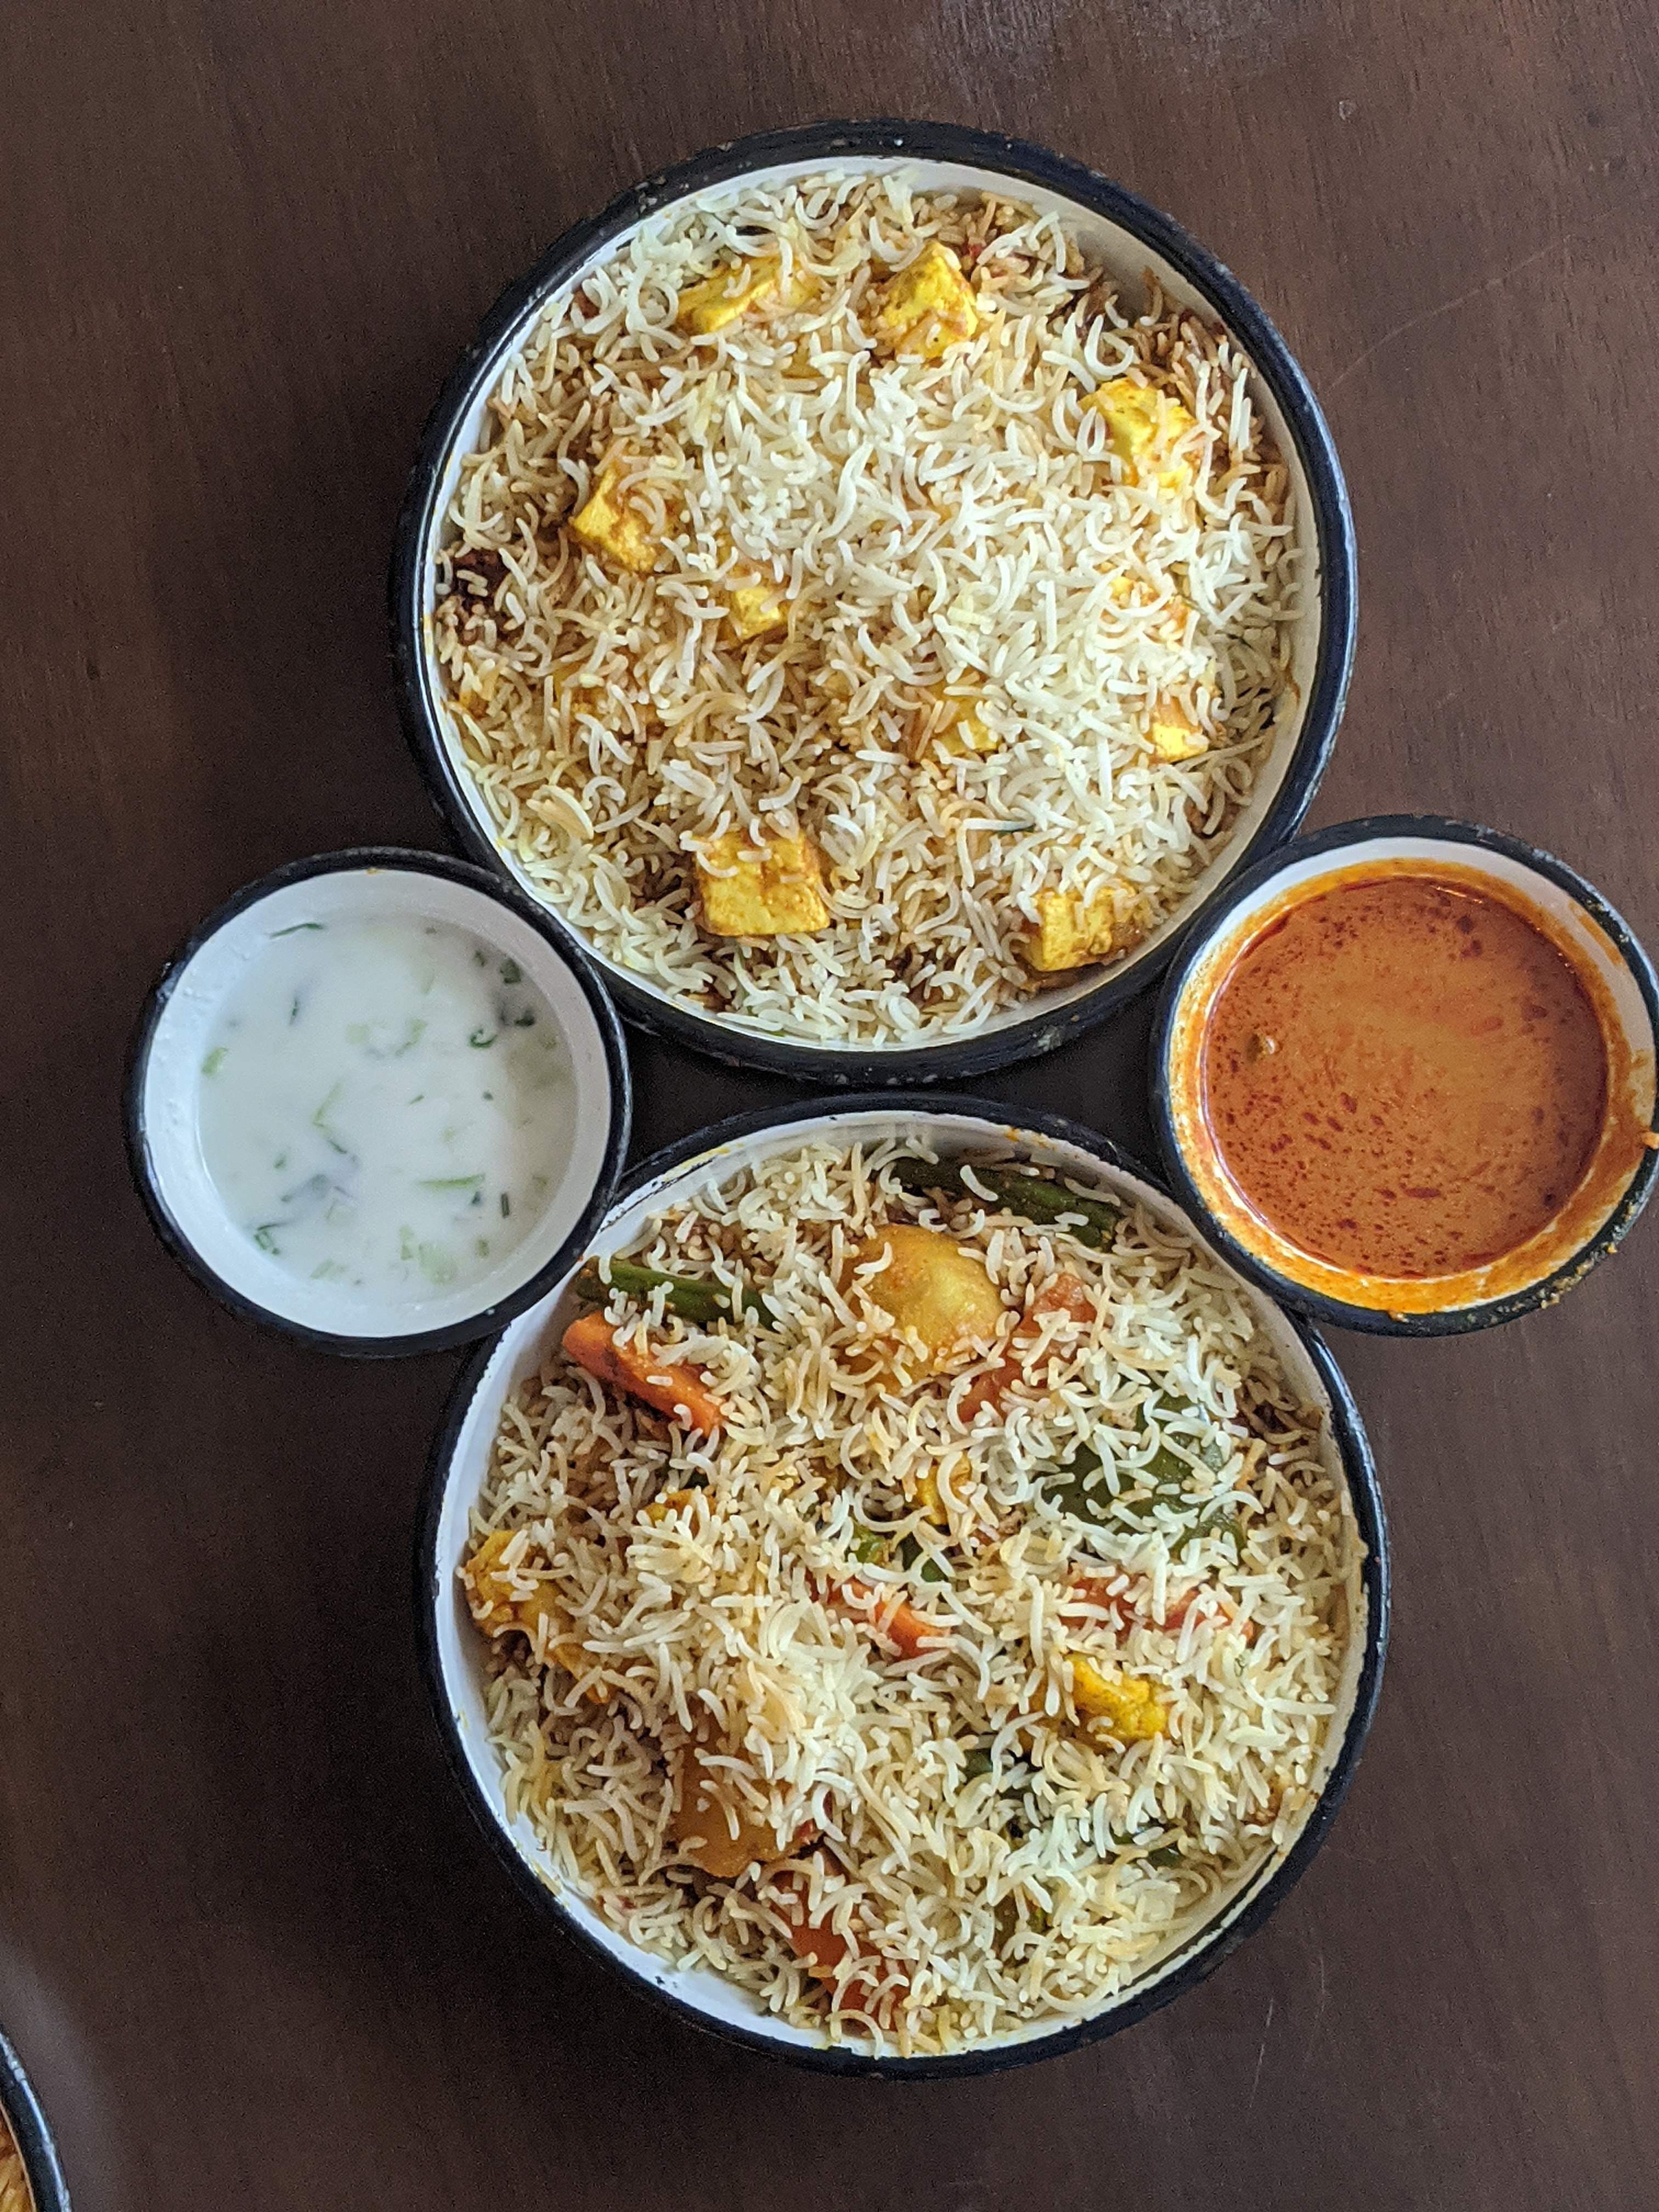 Dish,Food,Cuisine,Ingredient,Recipe,Indian cuisine,Produce,Biryani,Meal,Pakistani cuisine